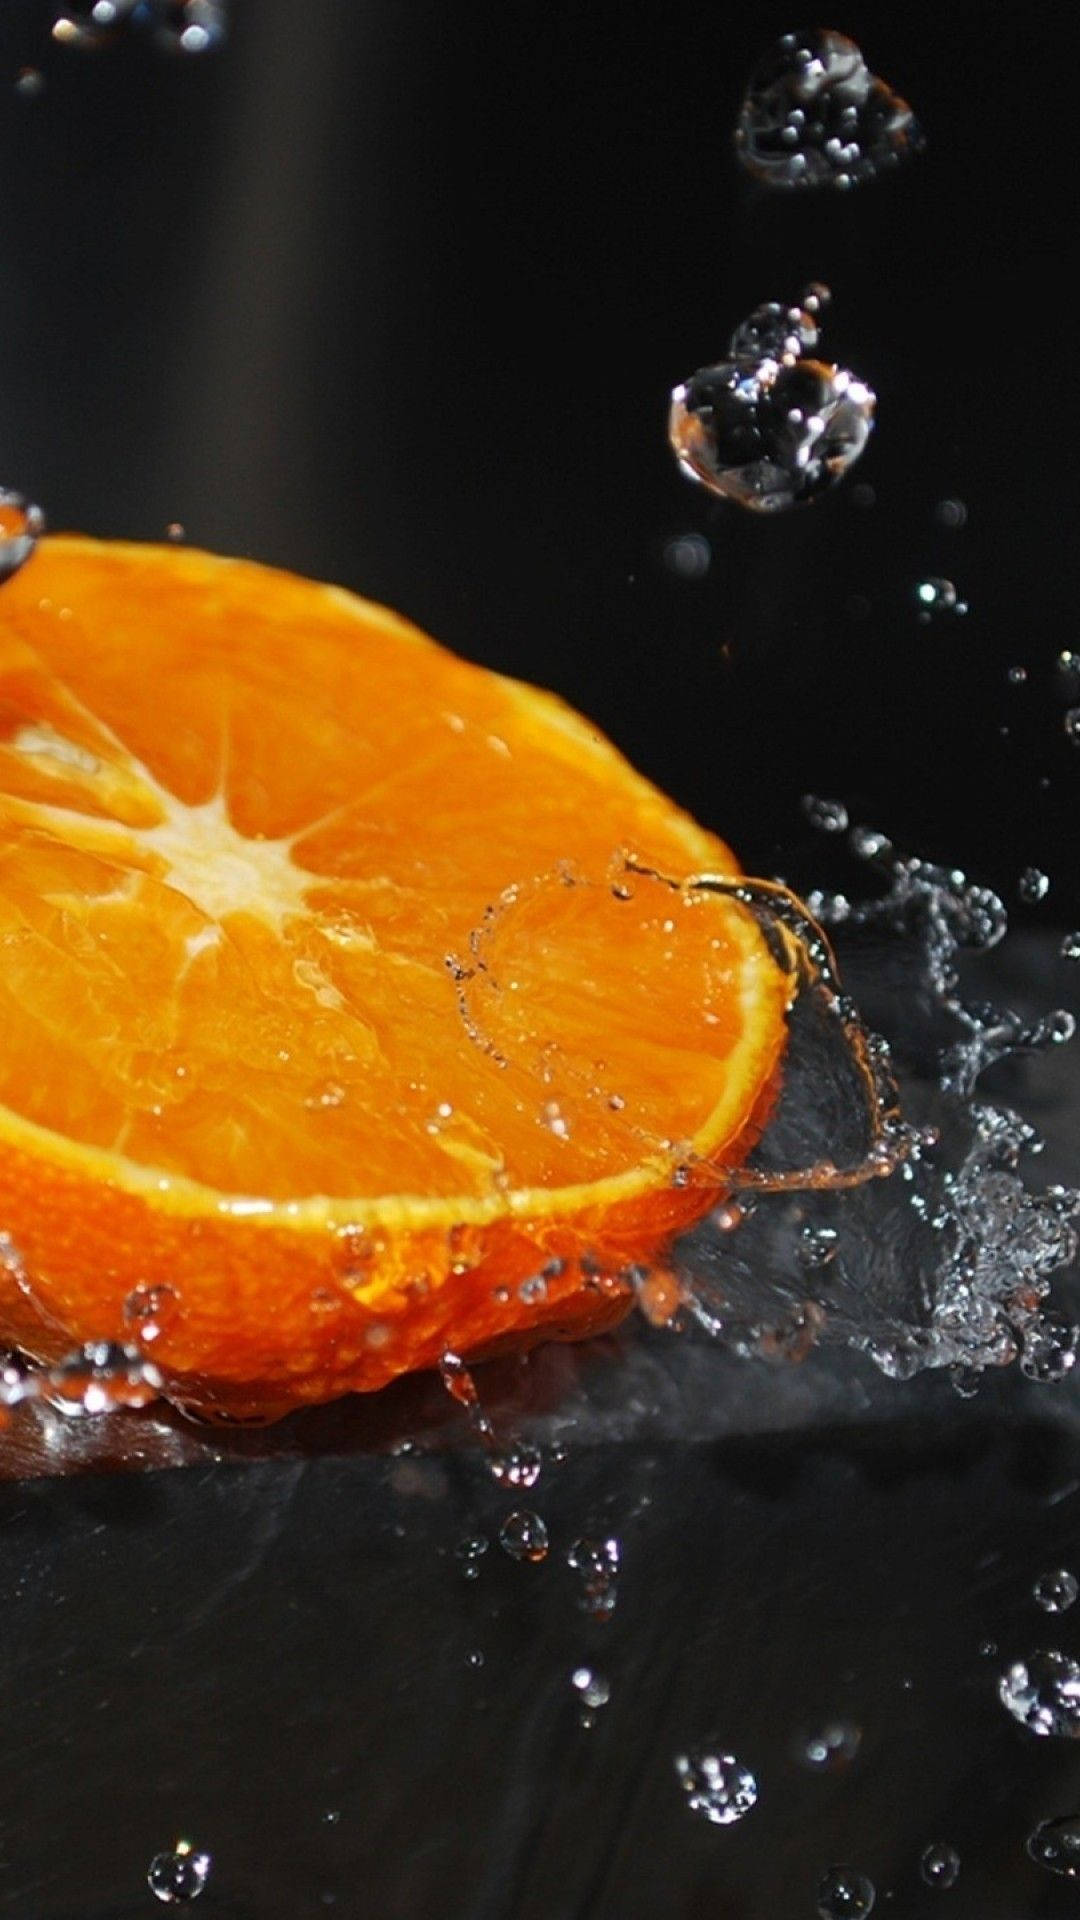 Orange Fruit With Water Splashes Background